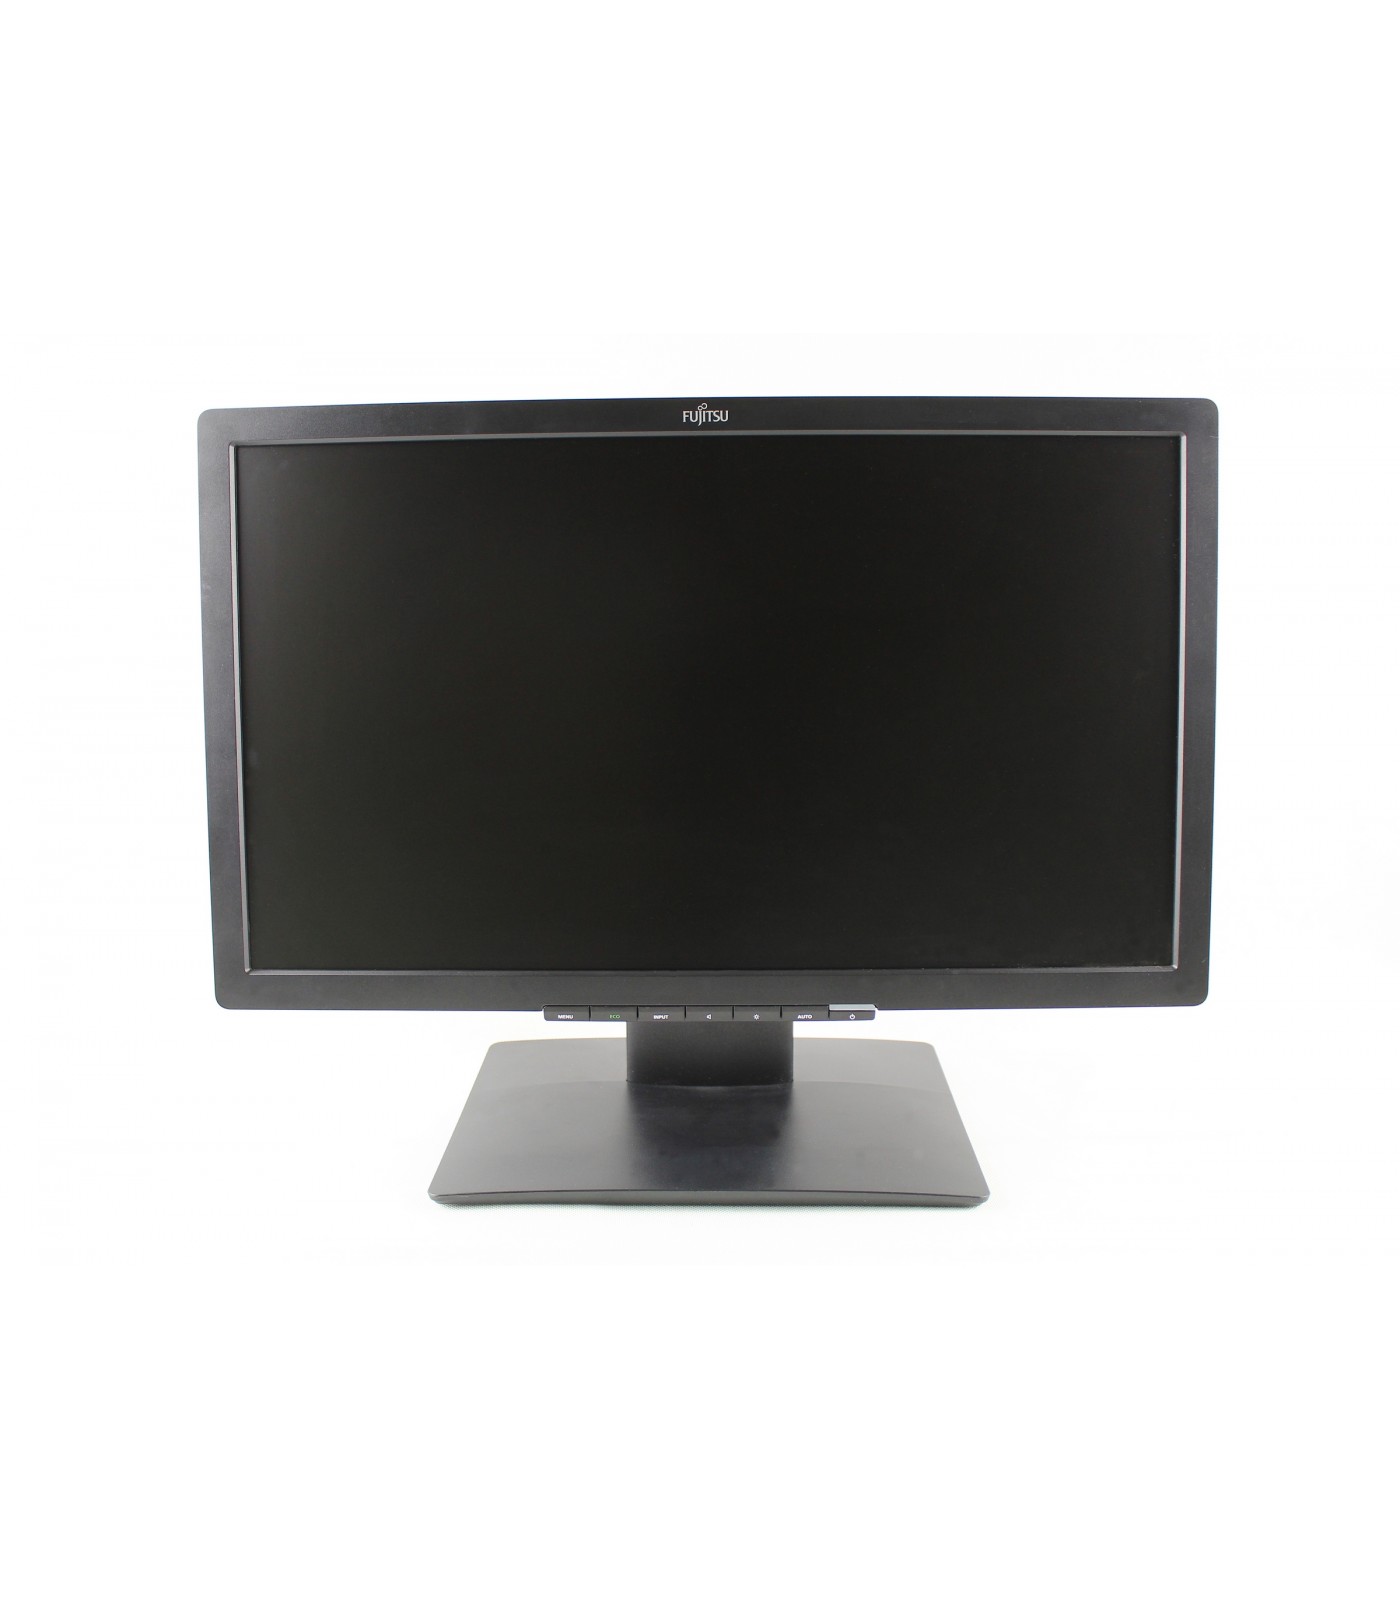 Poleasingowy monitor Fujitsu B22T-7 Pro 22" 1920x1080 IPS Klasa B